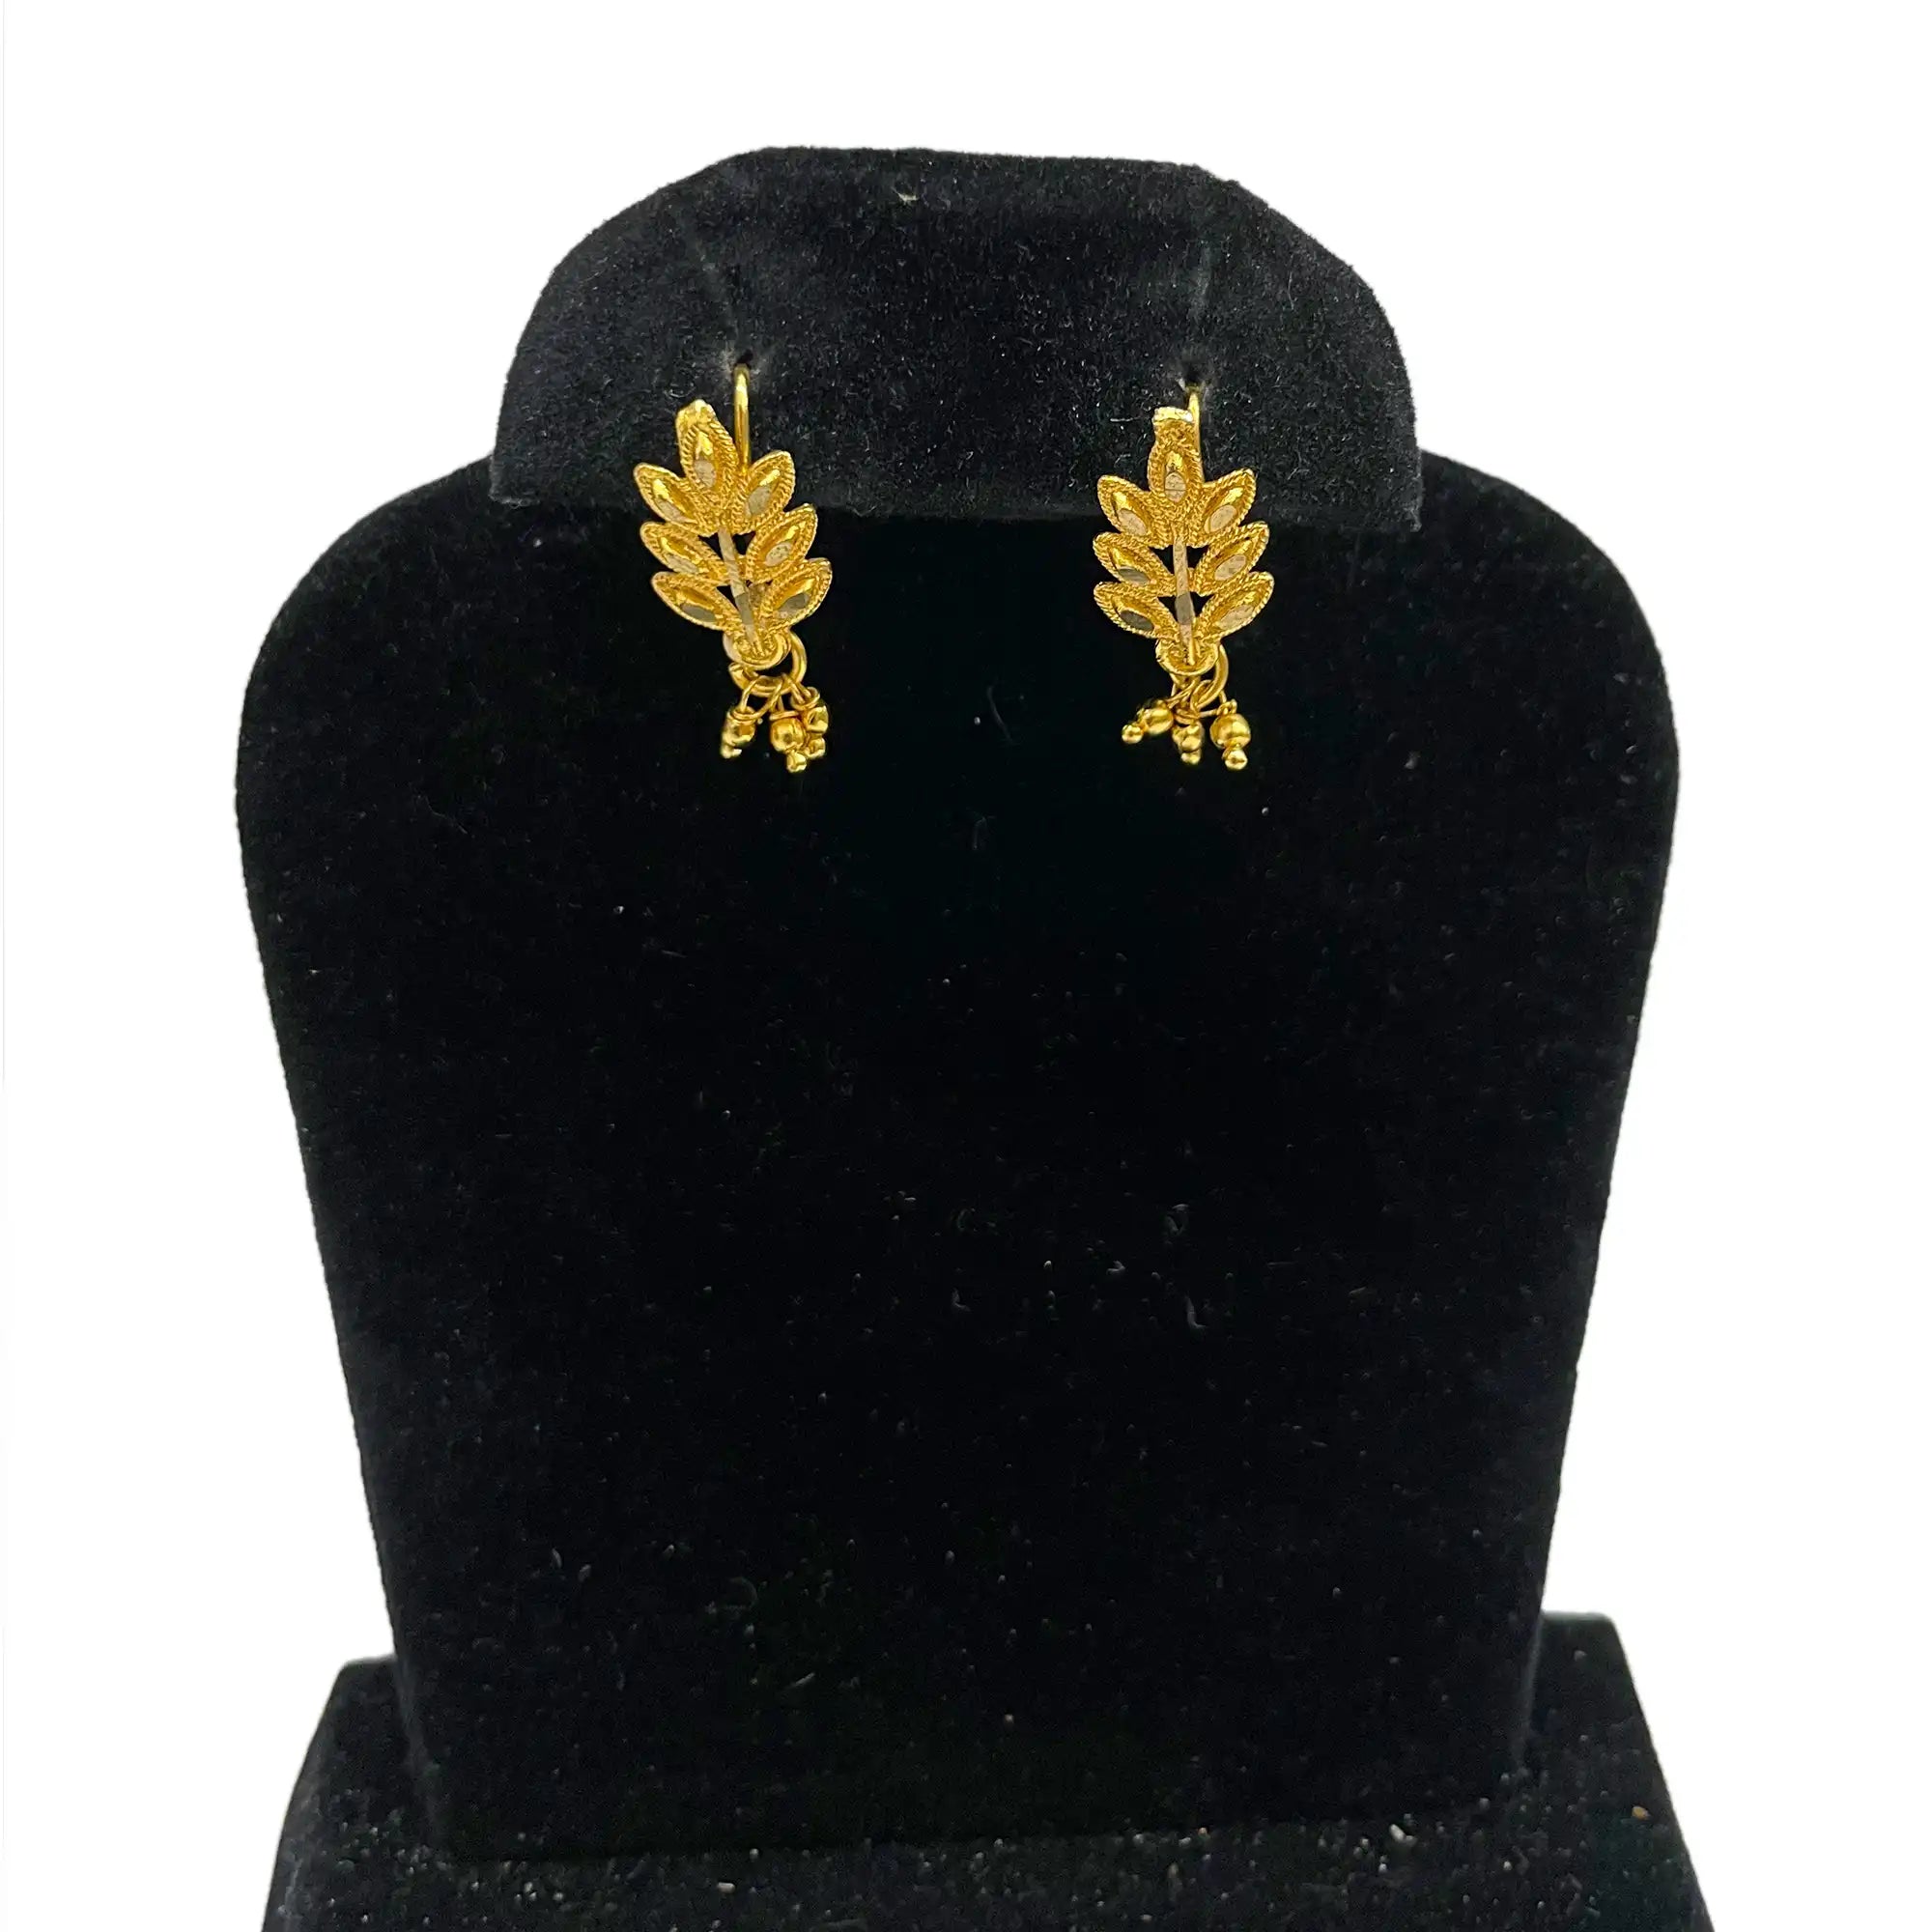 weddings unique earrings, drops earrings, gold plated earrings